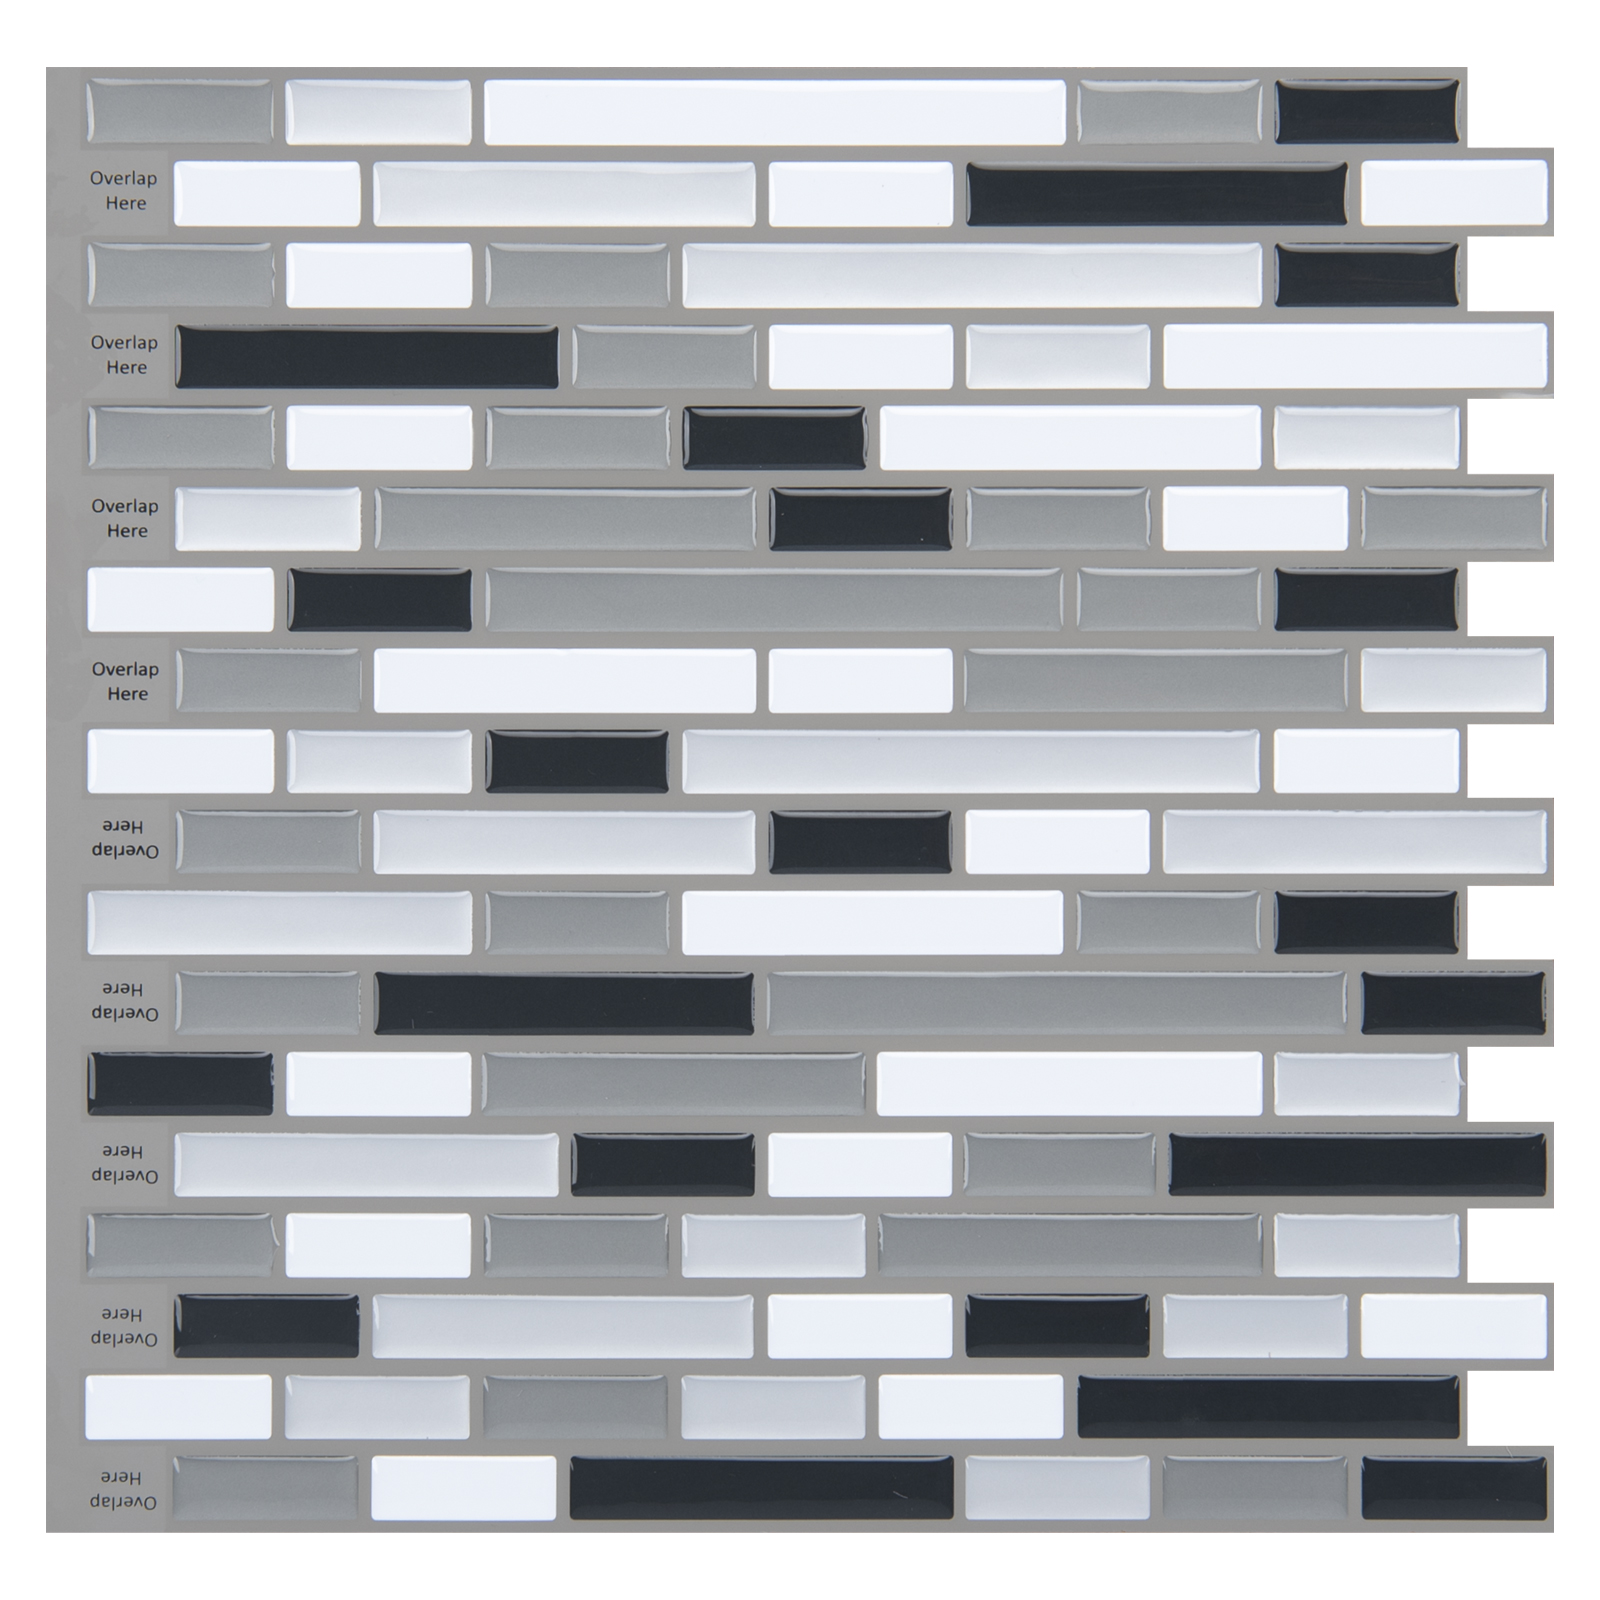 A17002- 20-Piece Stick on Backsplash Tile for Kitchen/Bathroom, 12